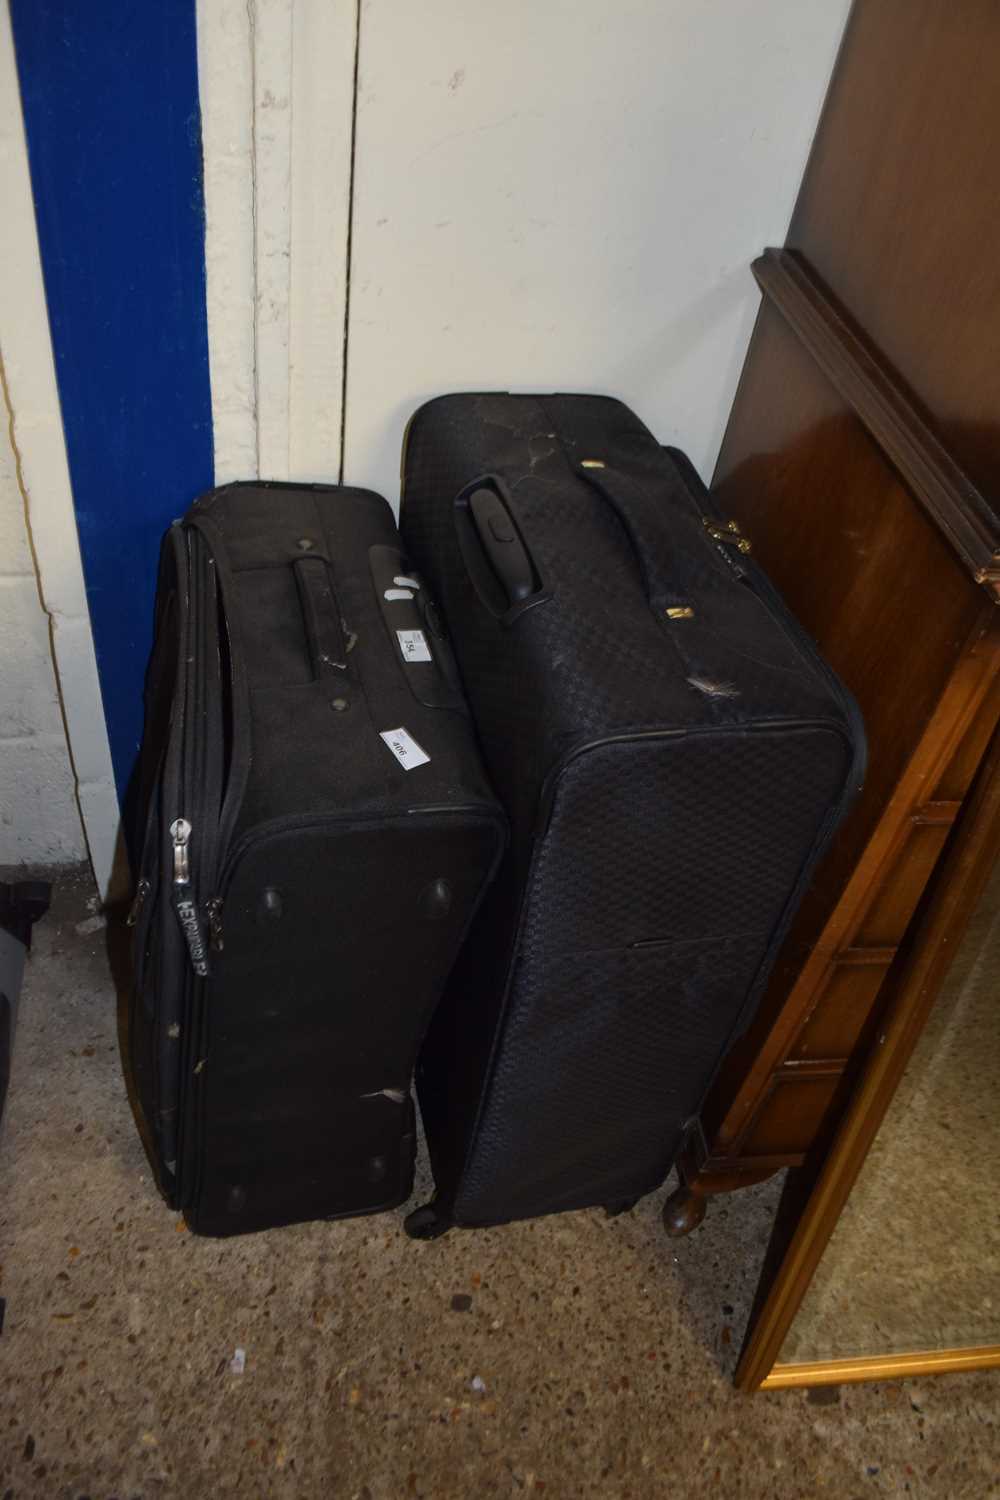 Quantity of suitcases